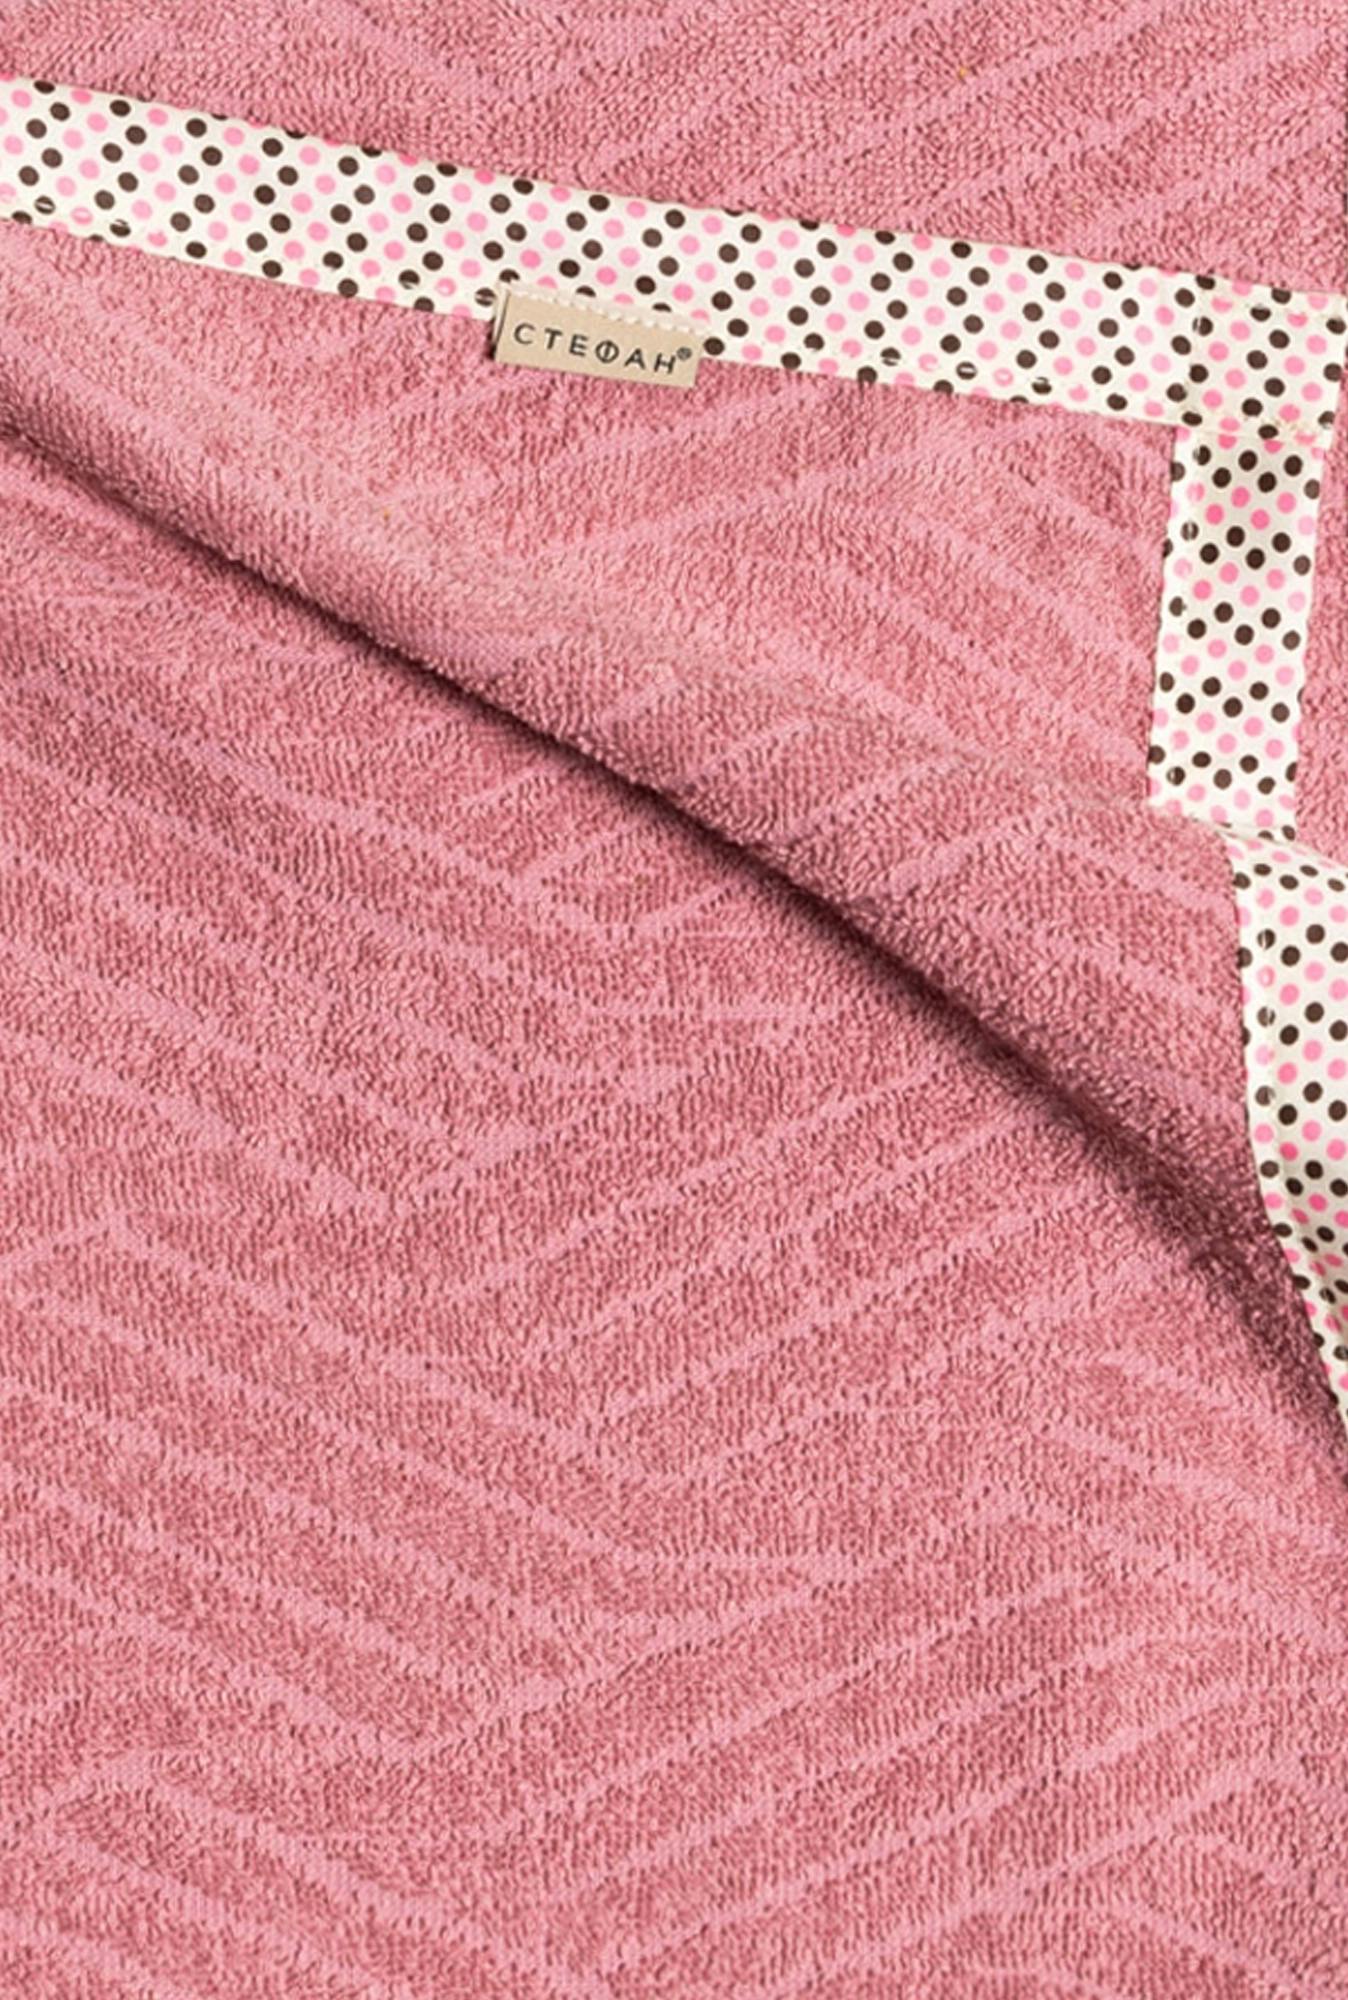 Bebi prekrivač frotir roze